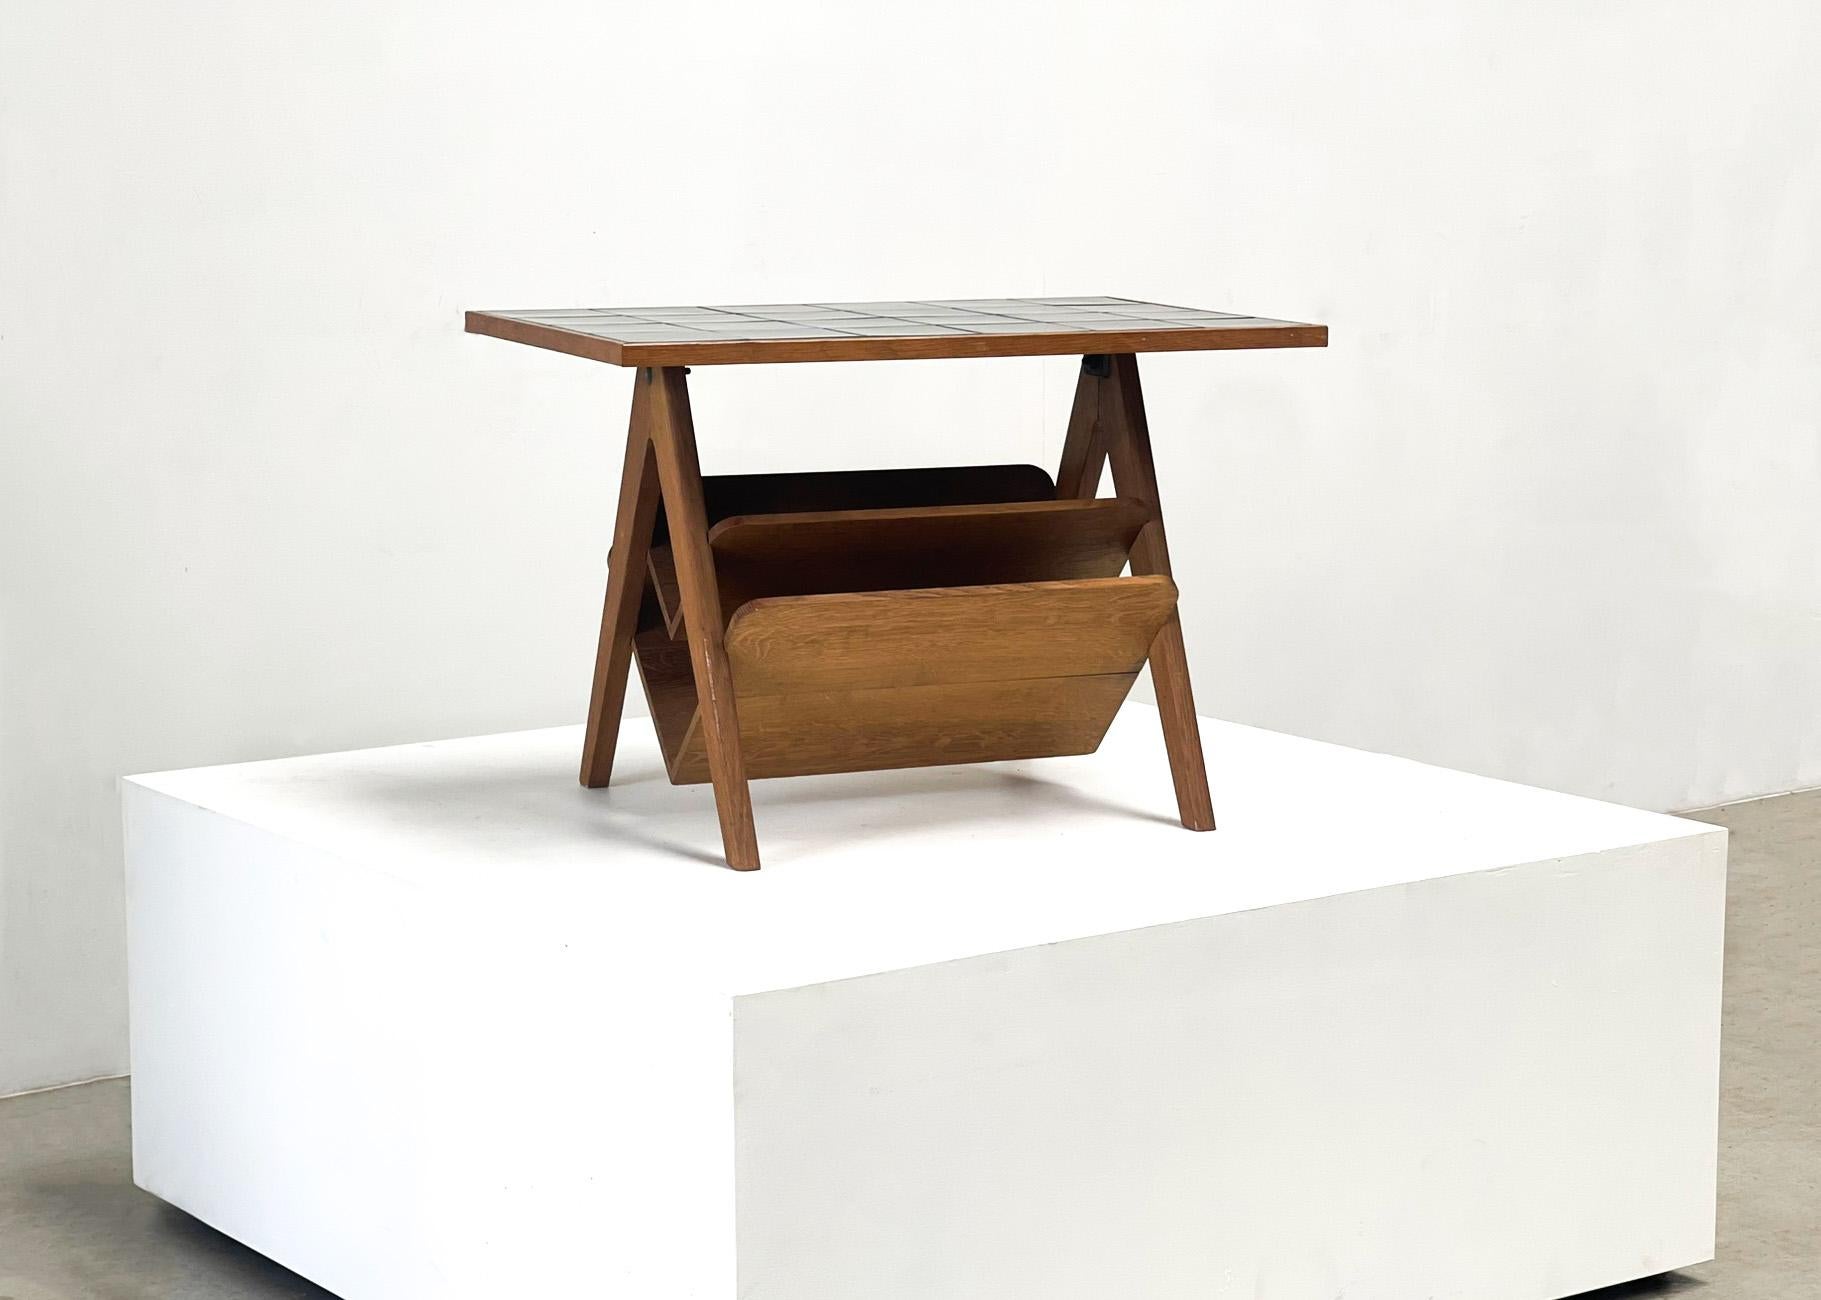 Zeitungstisch + Beistelltisch aus Frankreich der 60er Jahre. Dieser Tisch wurde in einer Kleinserie hergestellt. Die Oberseite besteht aus schwarzen Kacheln und der Rahmen aus einem schönen Eichenholzrahmen. Dieser Tisch ist den Tischen und Möbeln